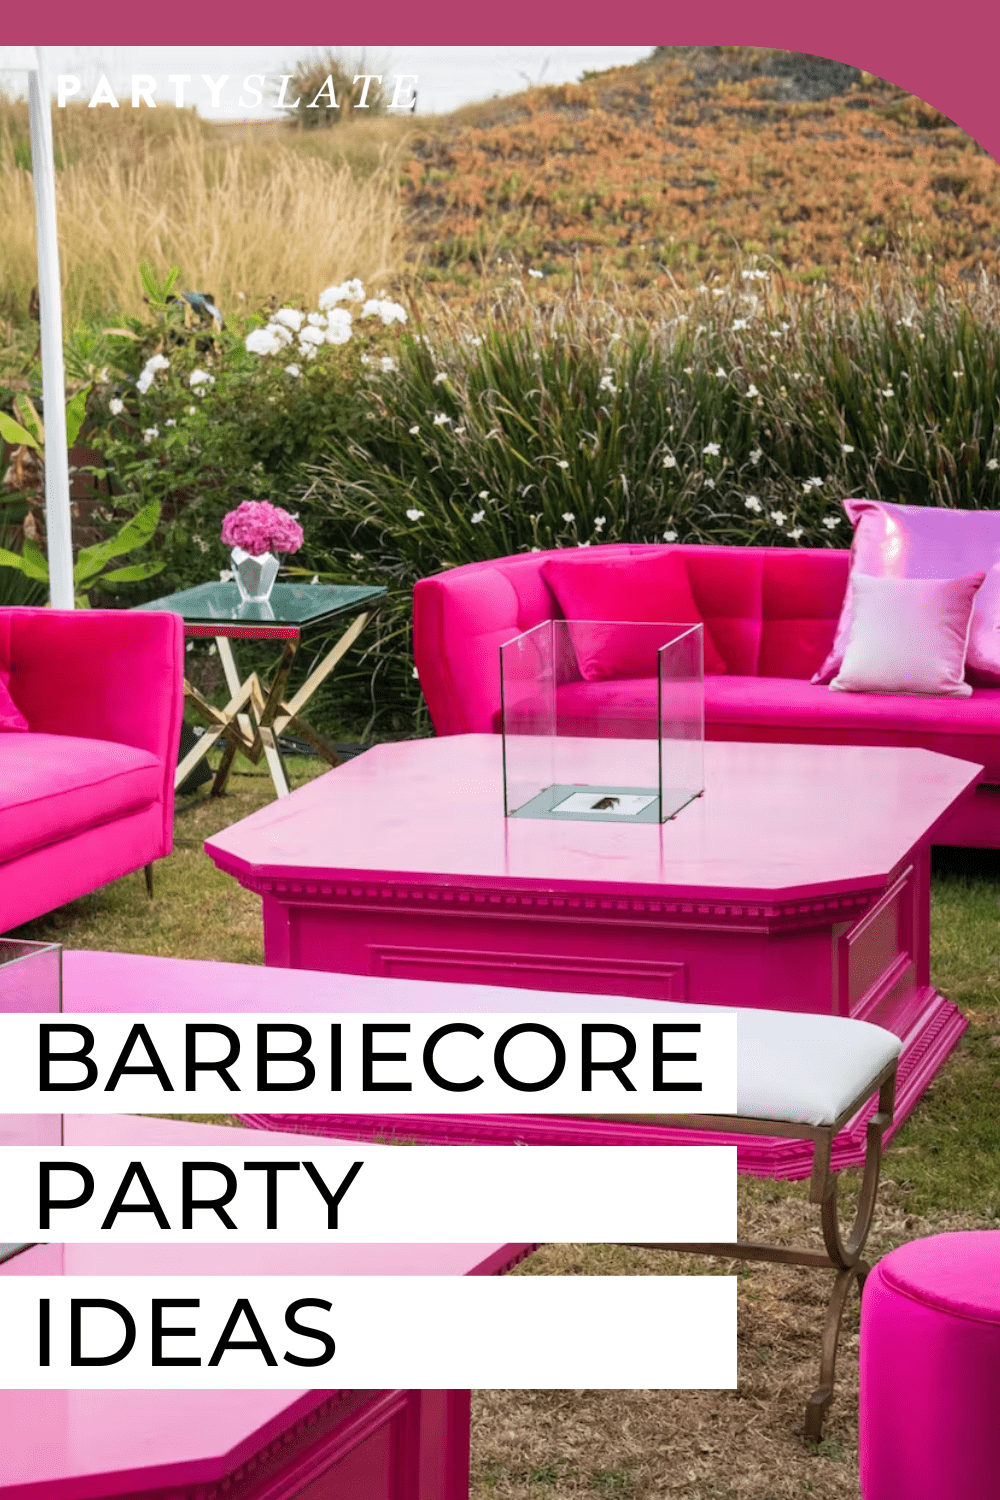 C’mon Barbie, Let’s Go Party — 18 Barbiecore Party Ideas